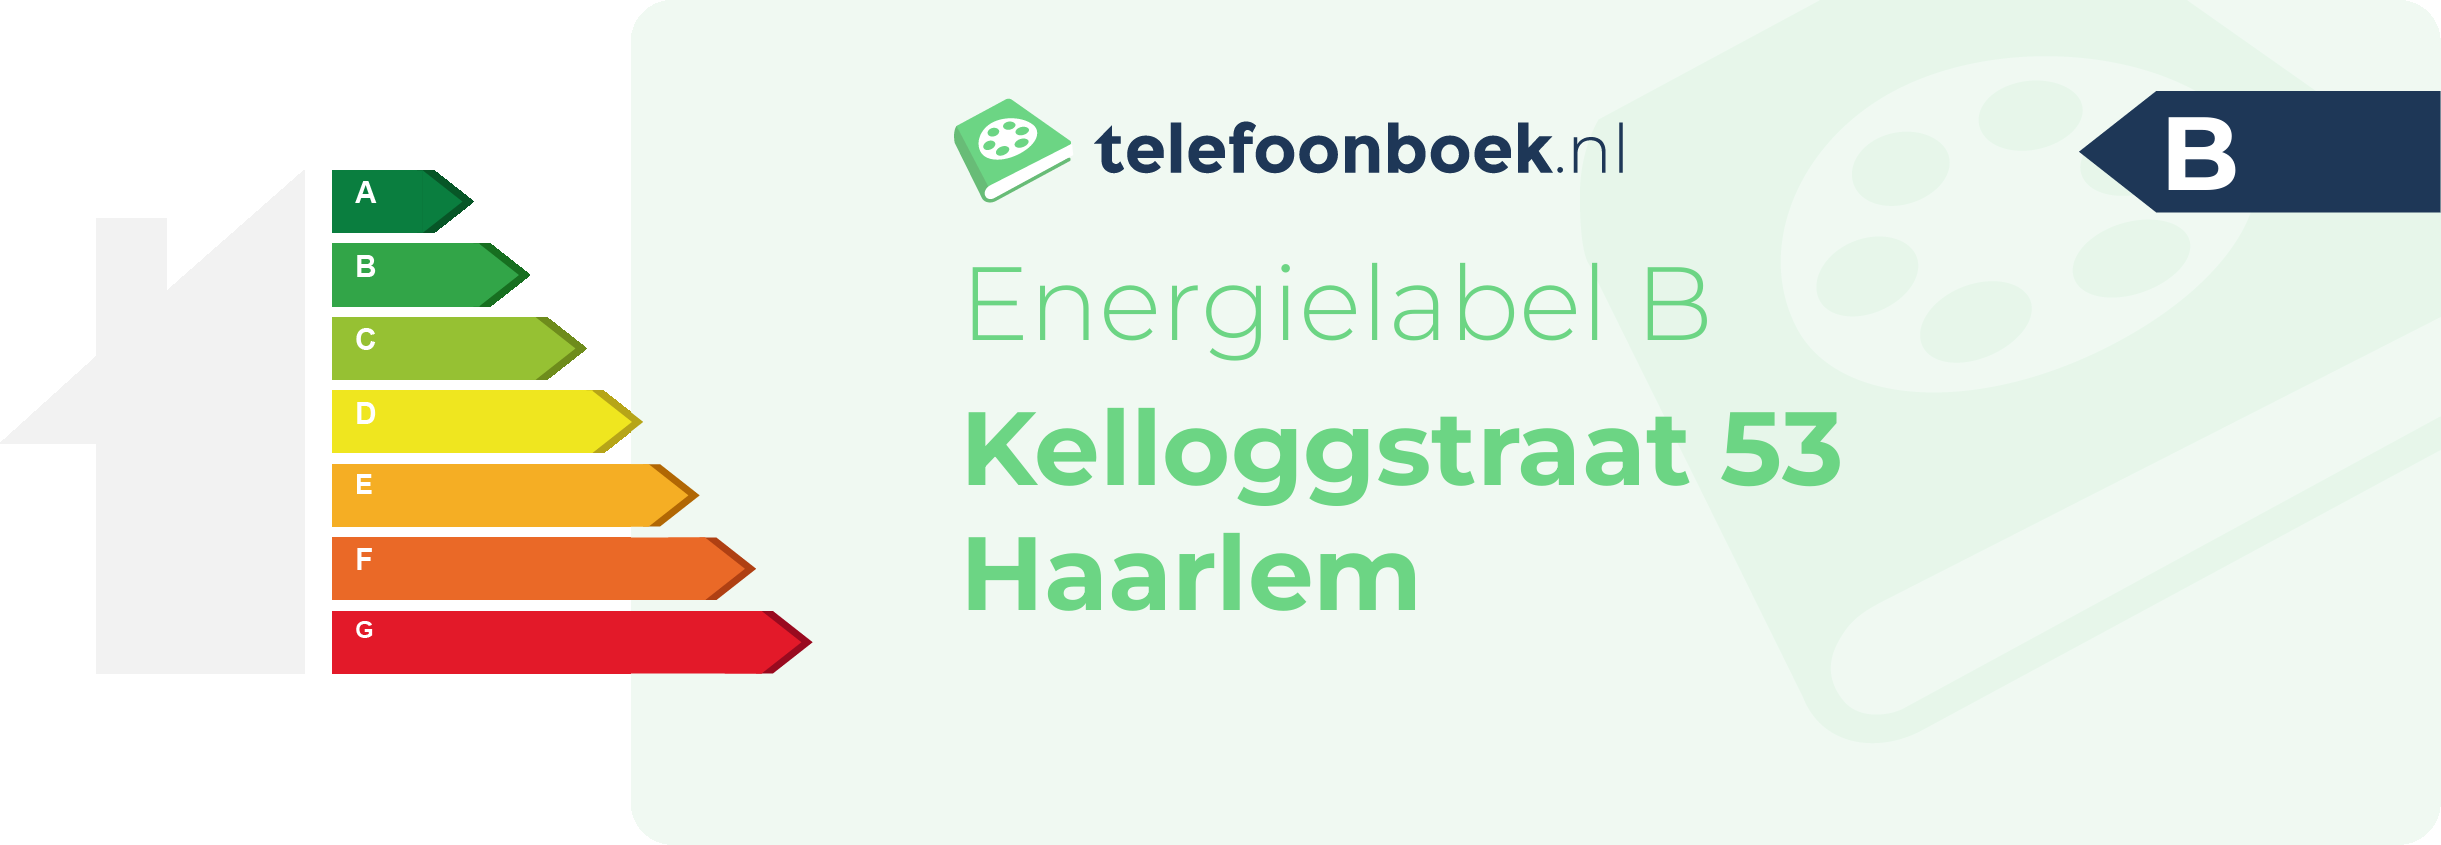 Energielabel Kelloggstraat 53 Haarlem